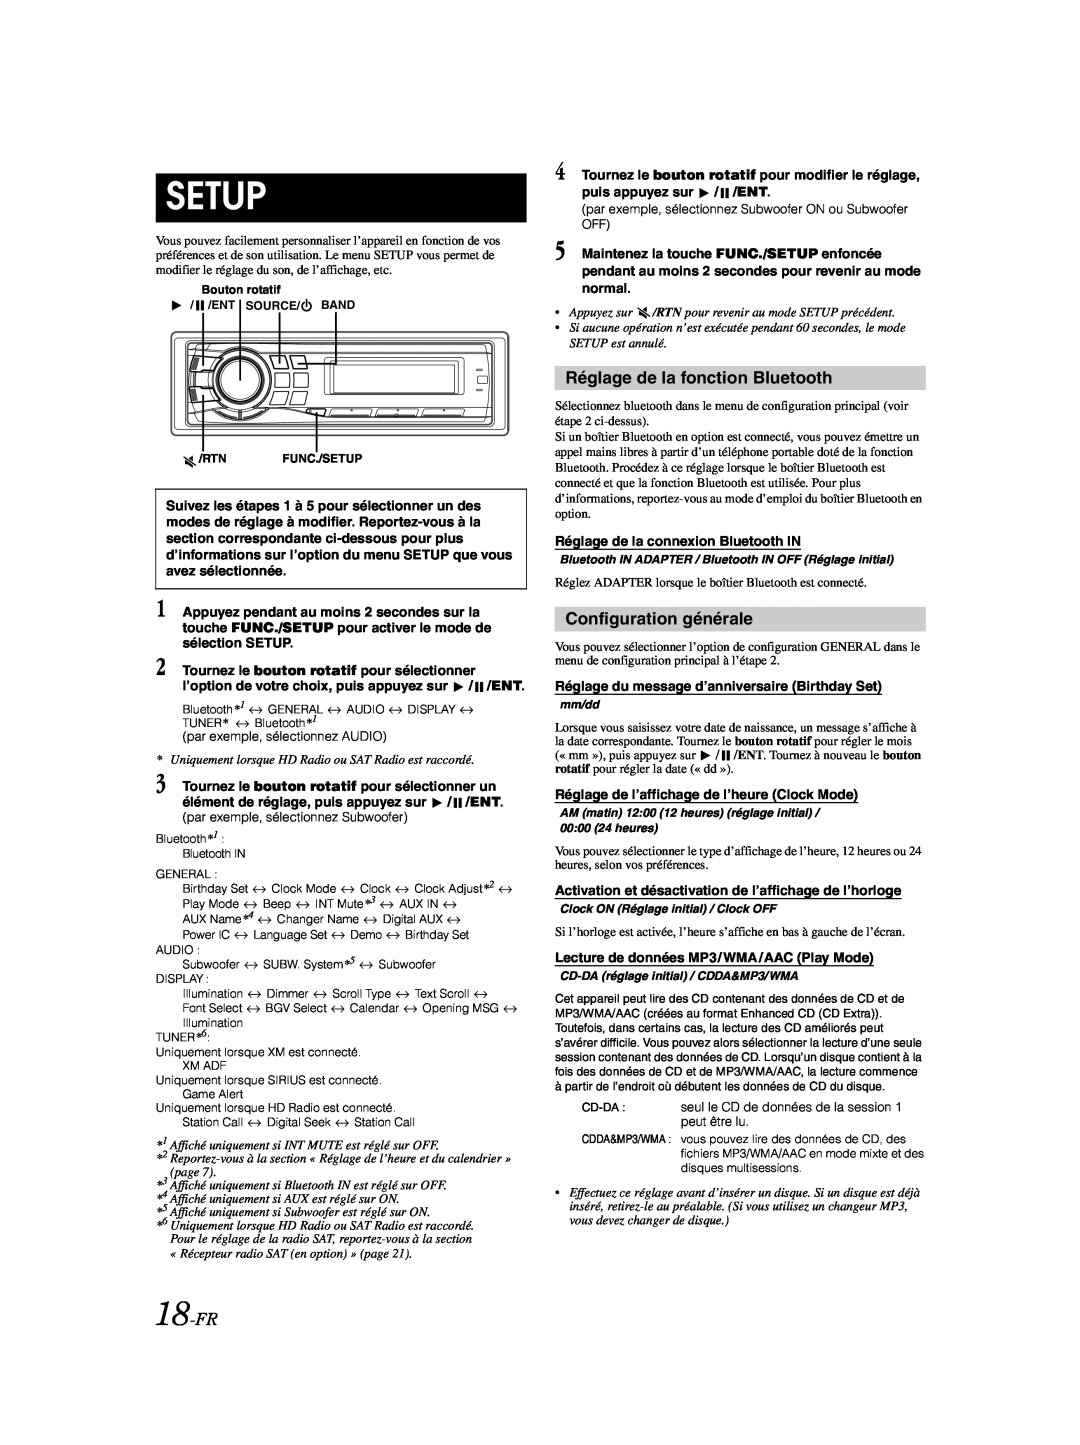 Alpine CDA-9885 owner manual Setup, Réglage de la fonction Bluetooth, Configuration générale, 18-FR 